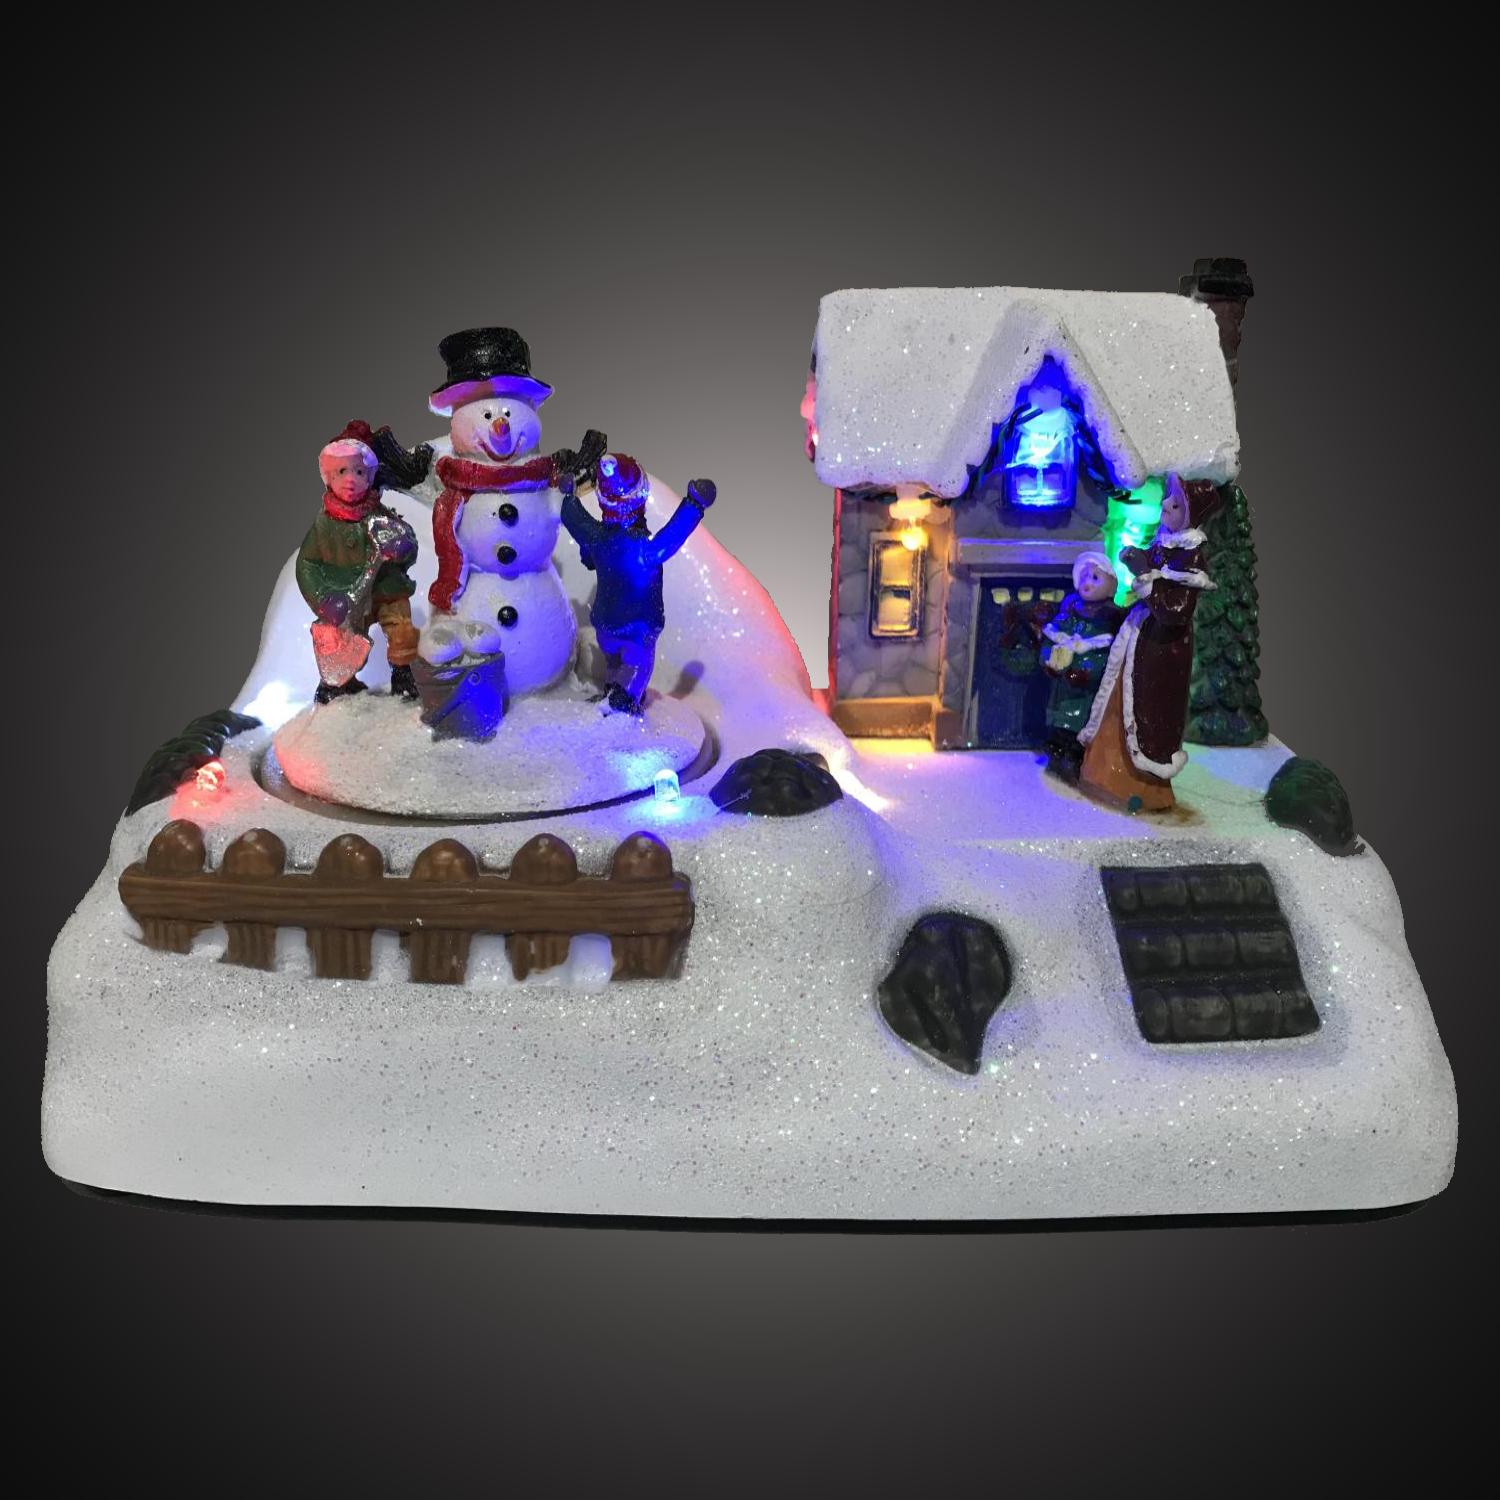 Kersthuisje - led kerstverlichting binnen - 7 lampjes - 10 x 18 x 12 cm - multicolor - 3x AA